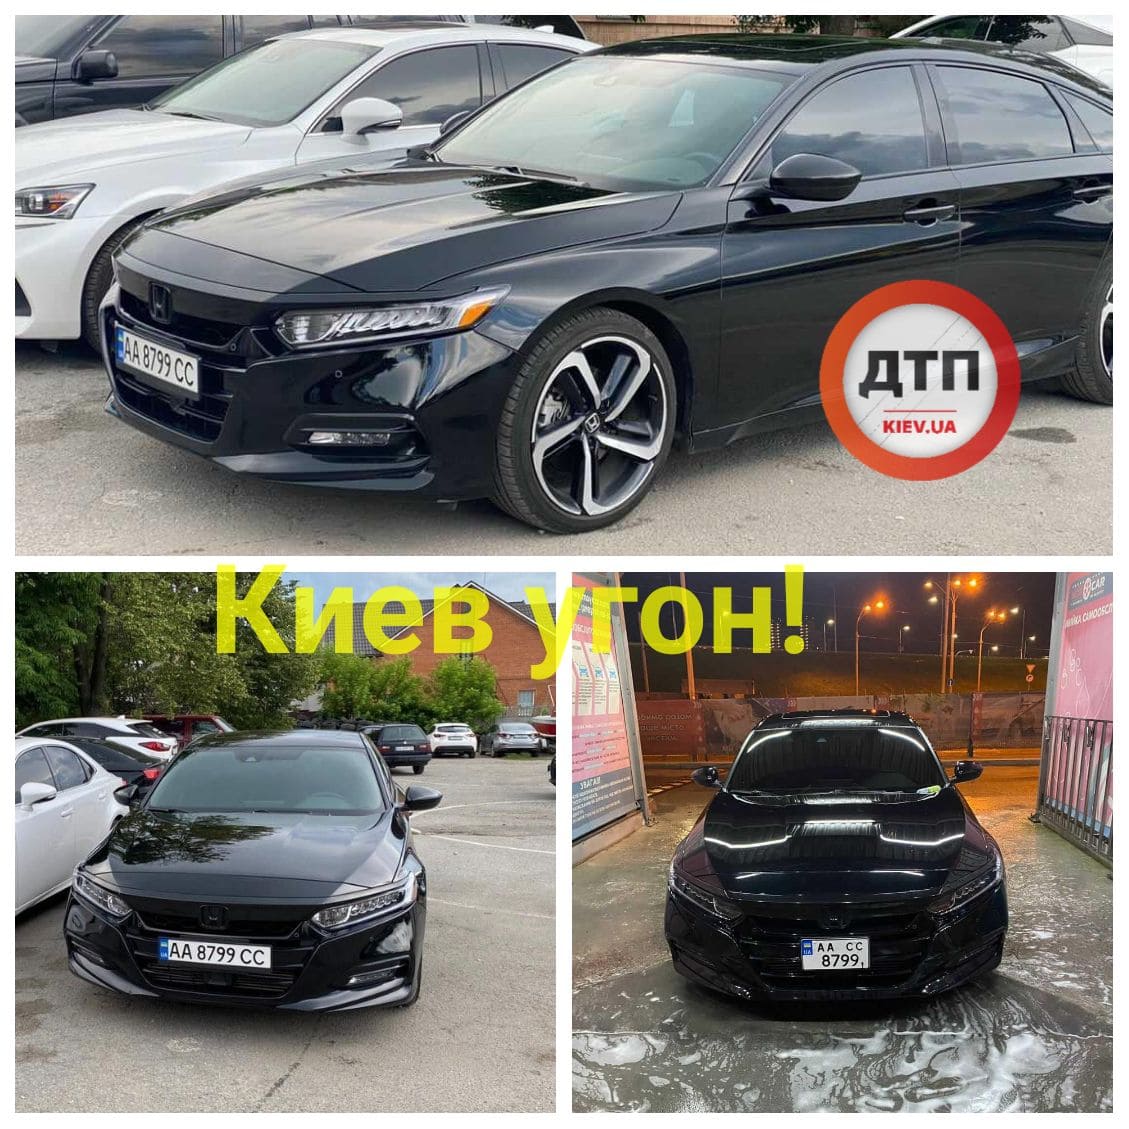 В Киеве на Академгородке угнали автомобиль Honda Accord